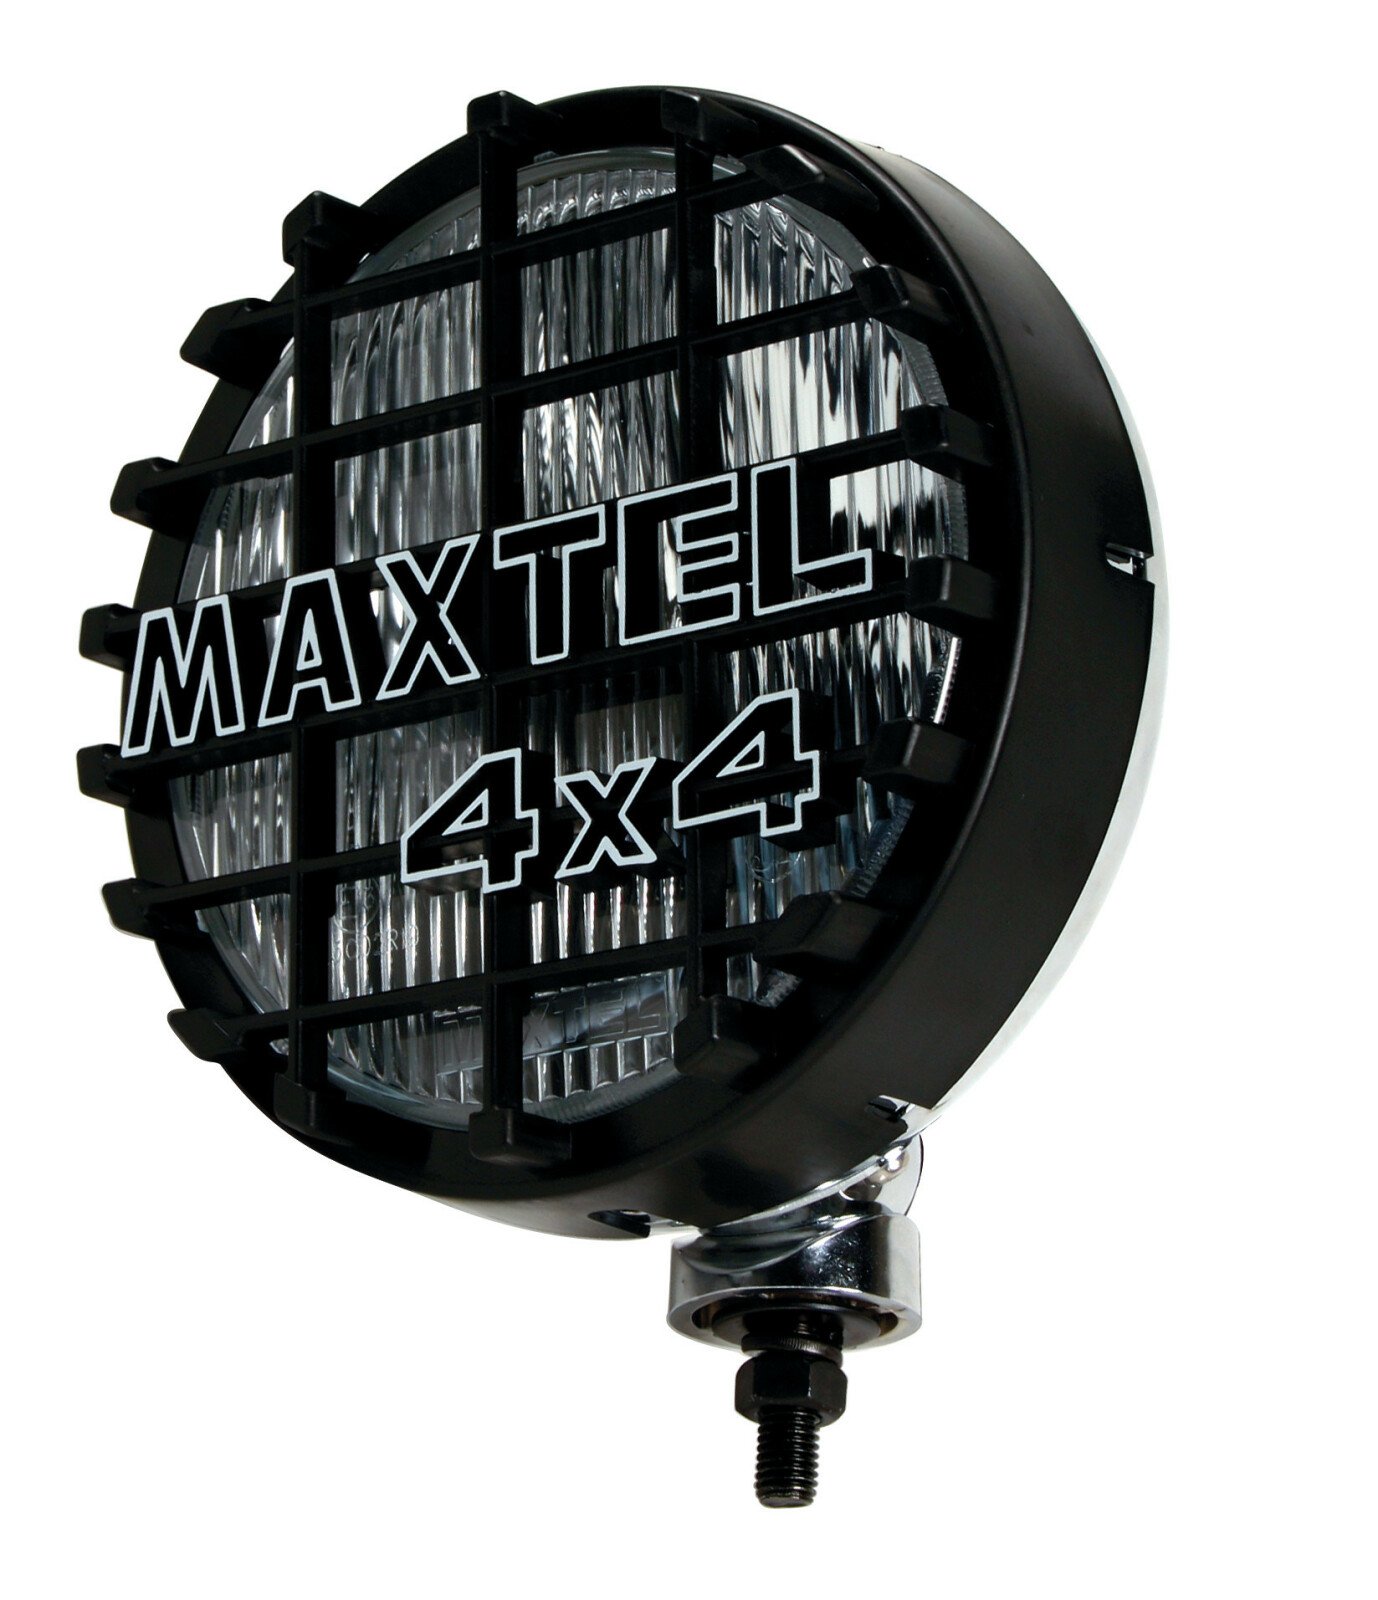 Proiector inox Maxtel 4x4 rotund 1buc - Alb - Ceata thumb